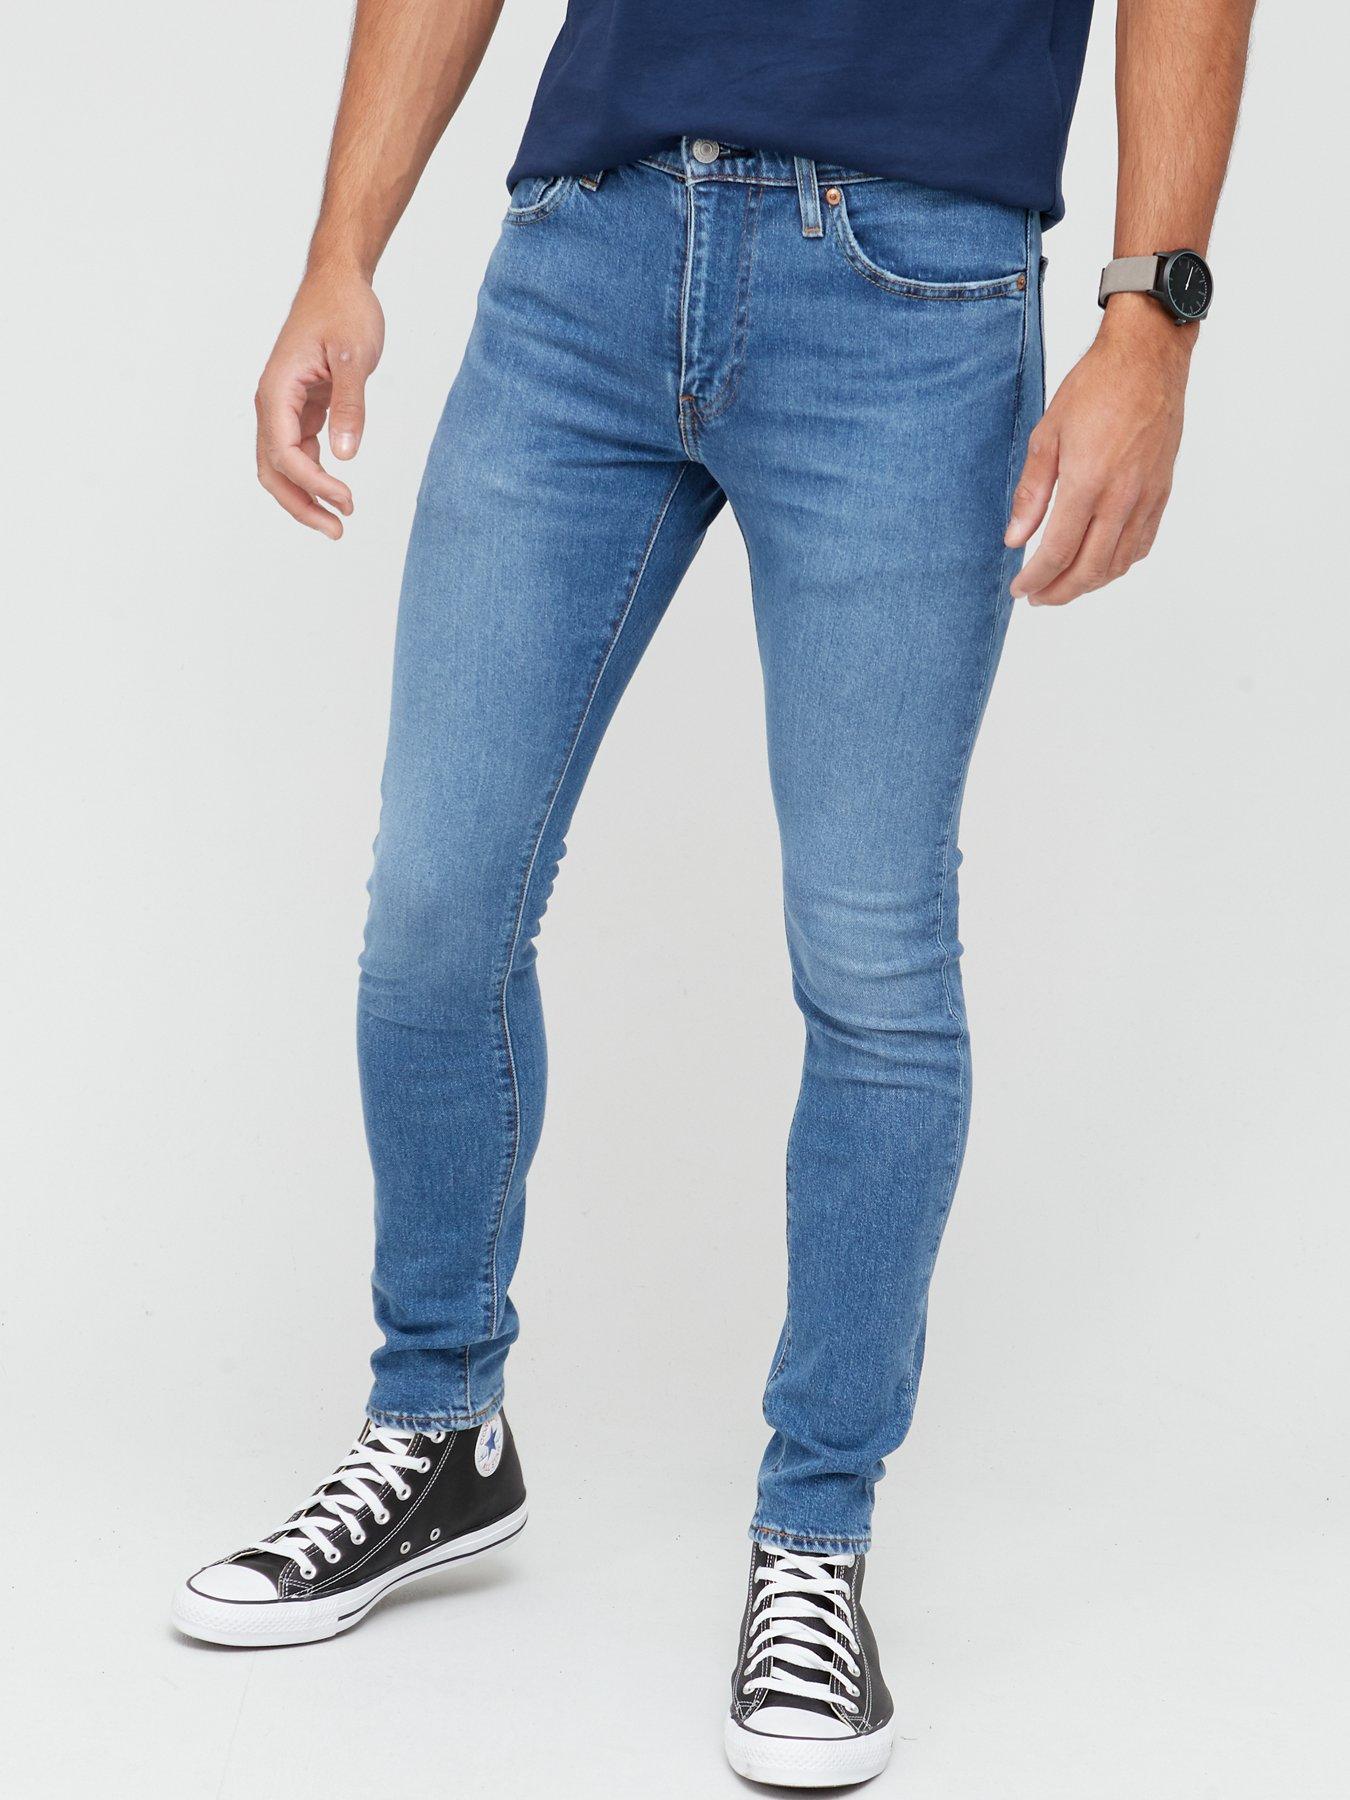 Levi's Skinny Taper Fit Jeans - Mid Wash 